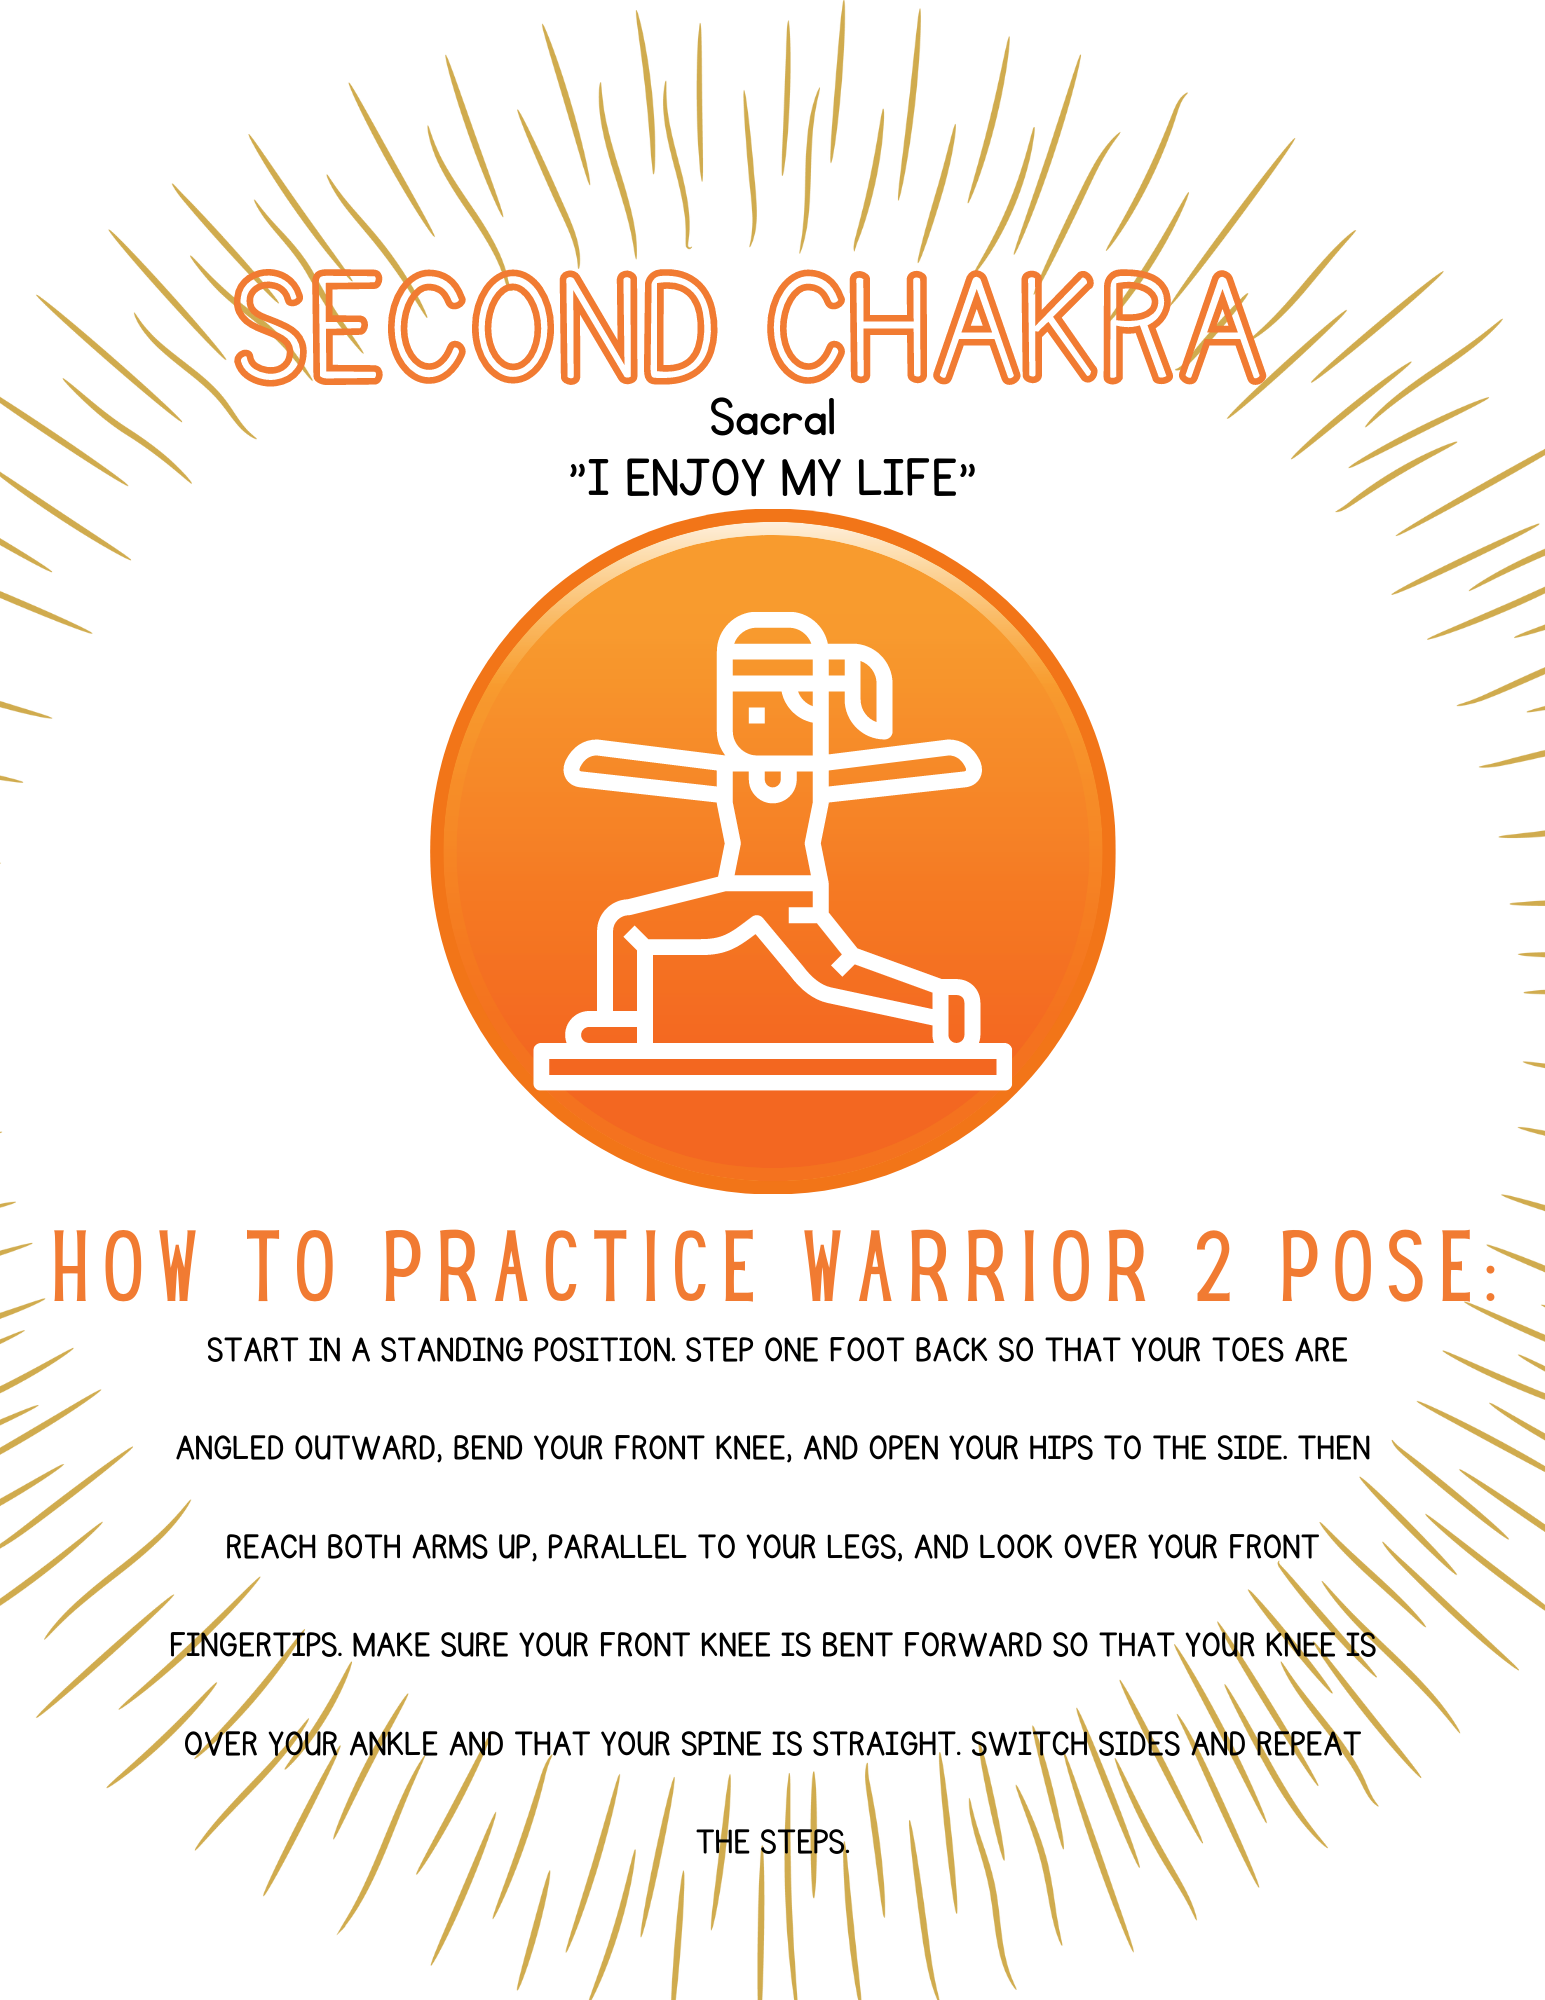 Sacral Chakra Flow | Yoga with Katrina - YouTube